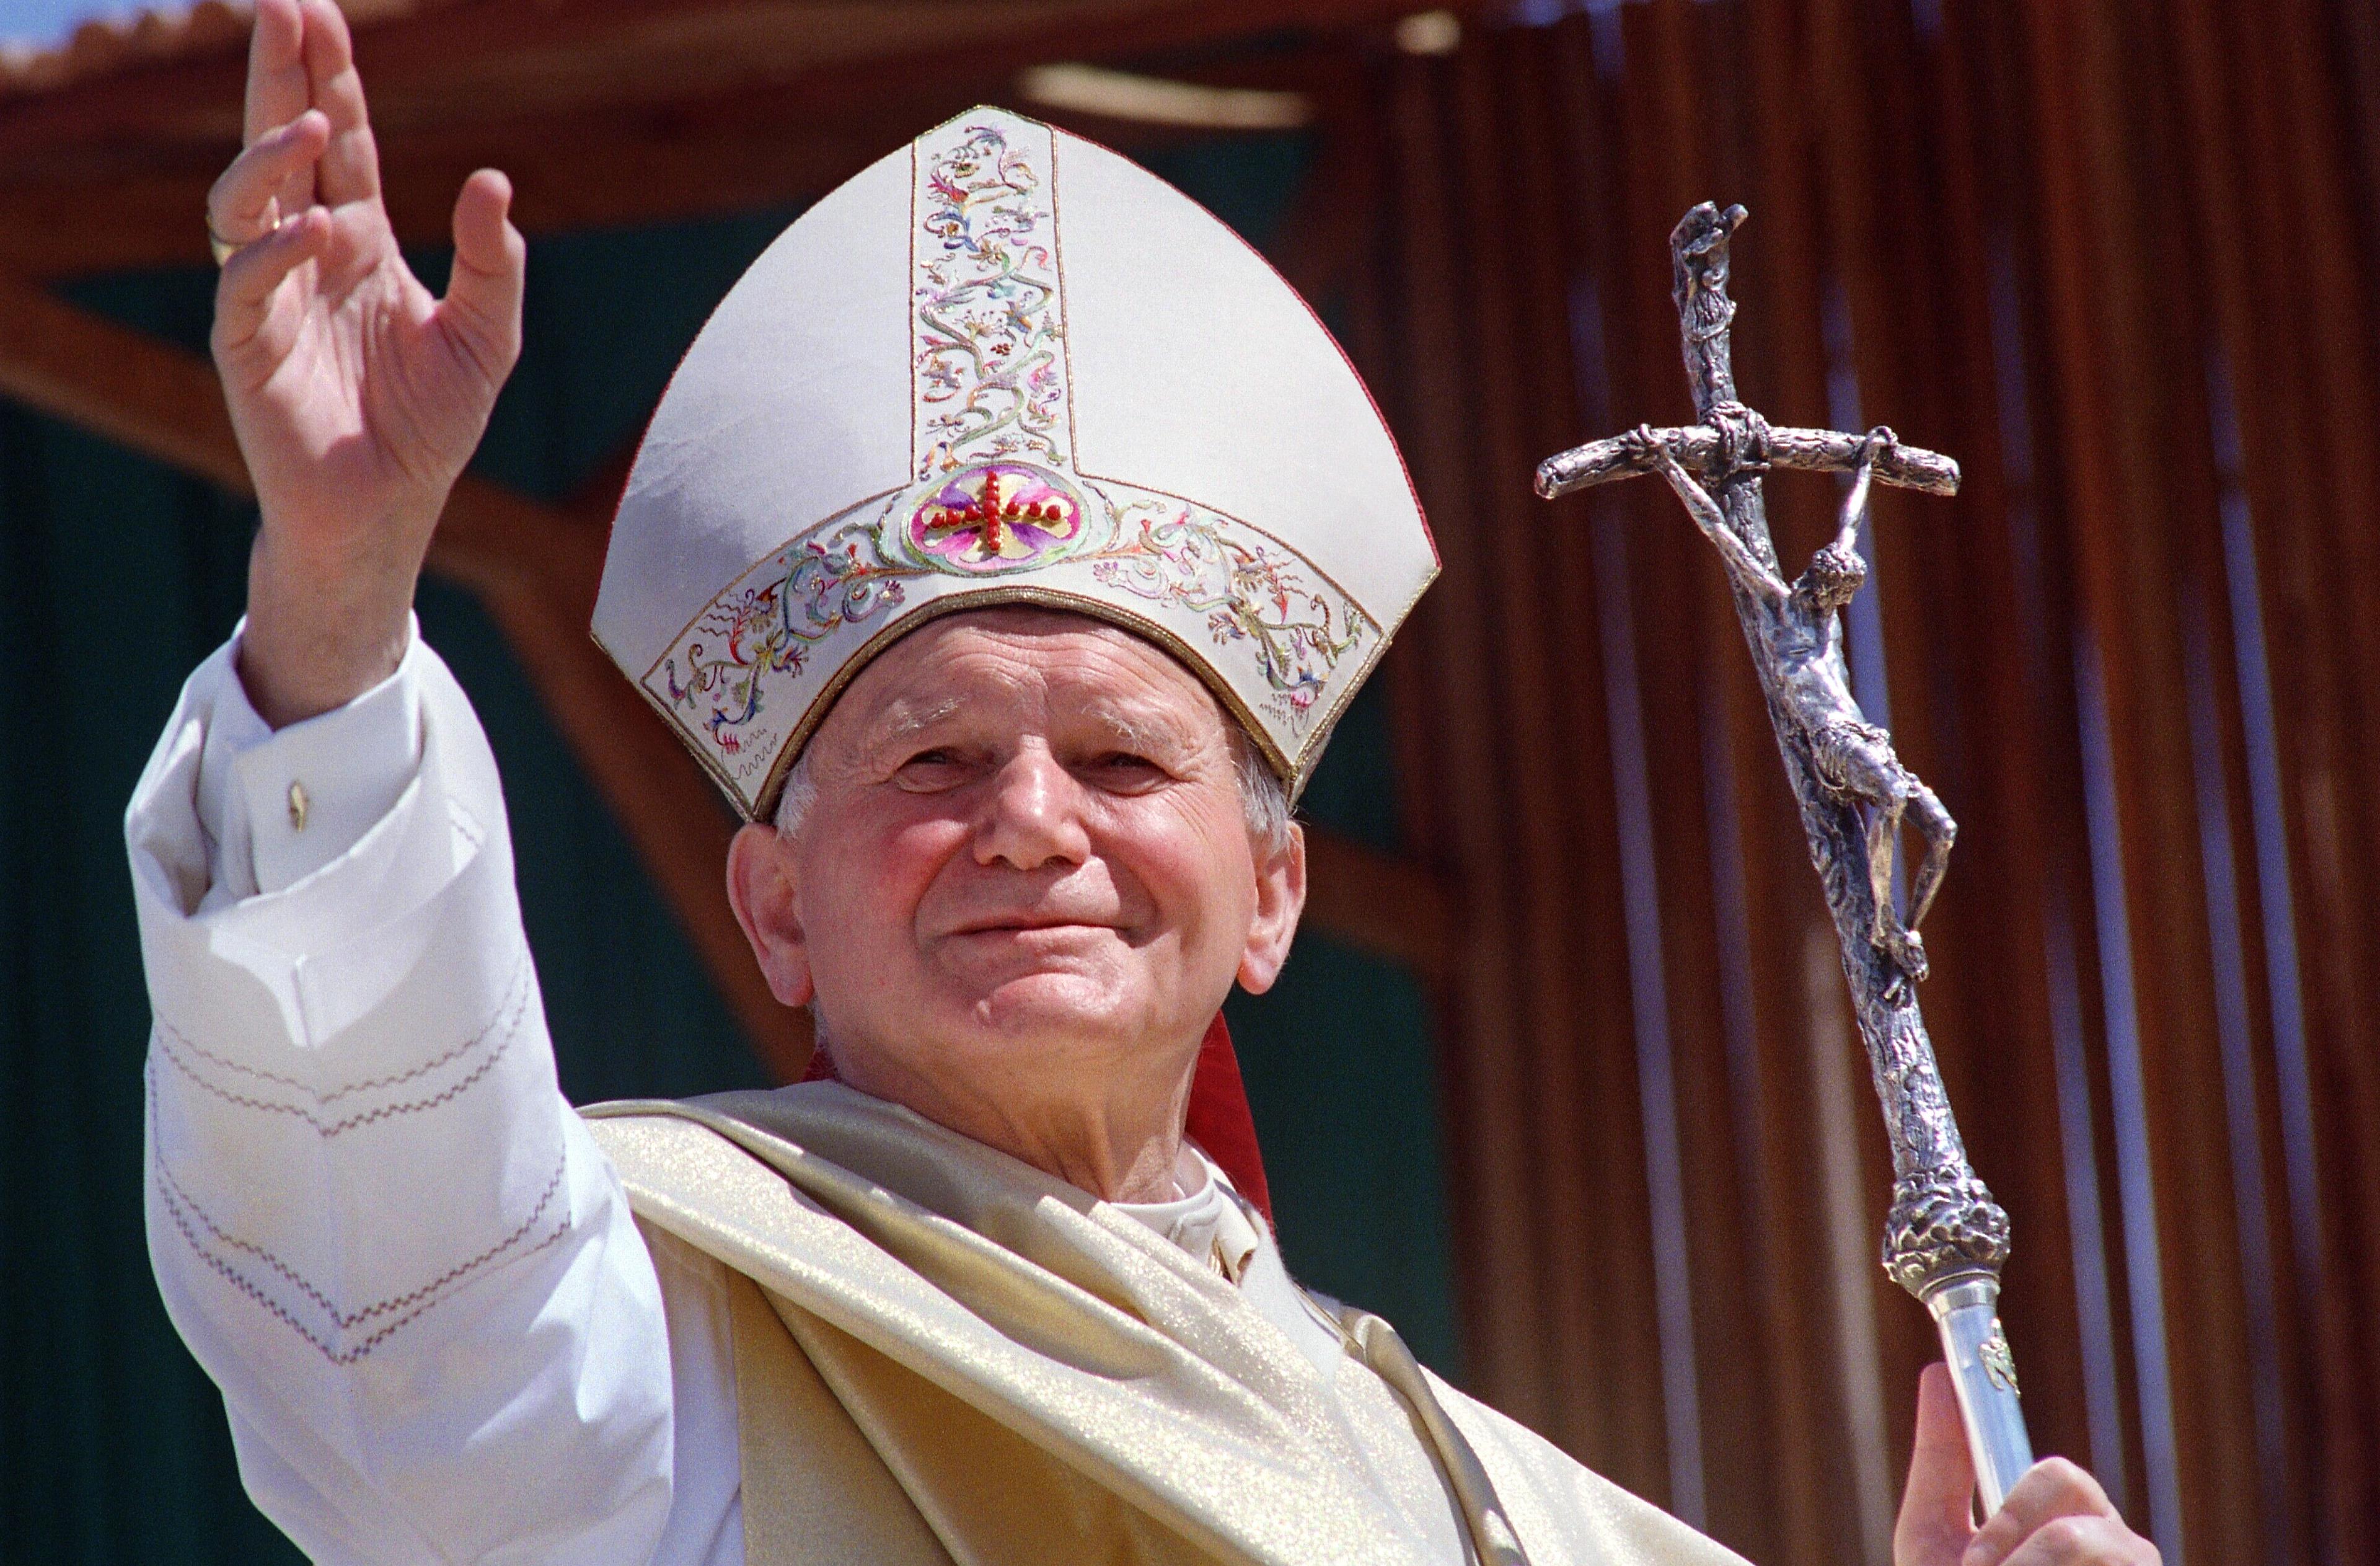 Frasi celebri Giovanni Paolo II: le più belle e significative